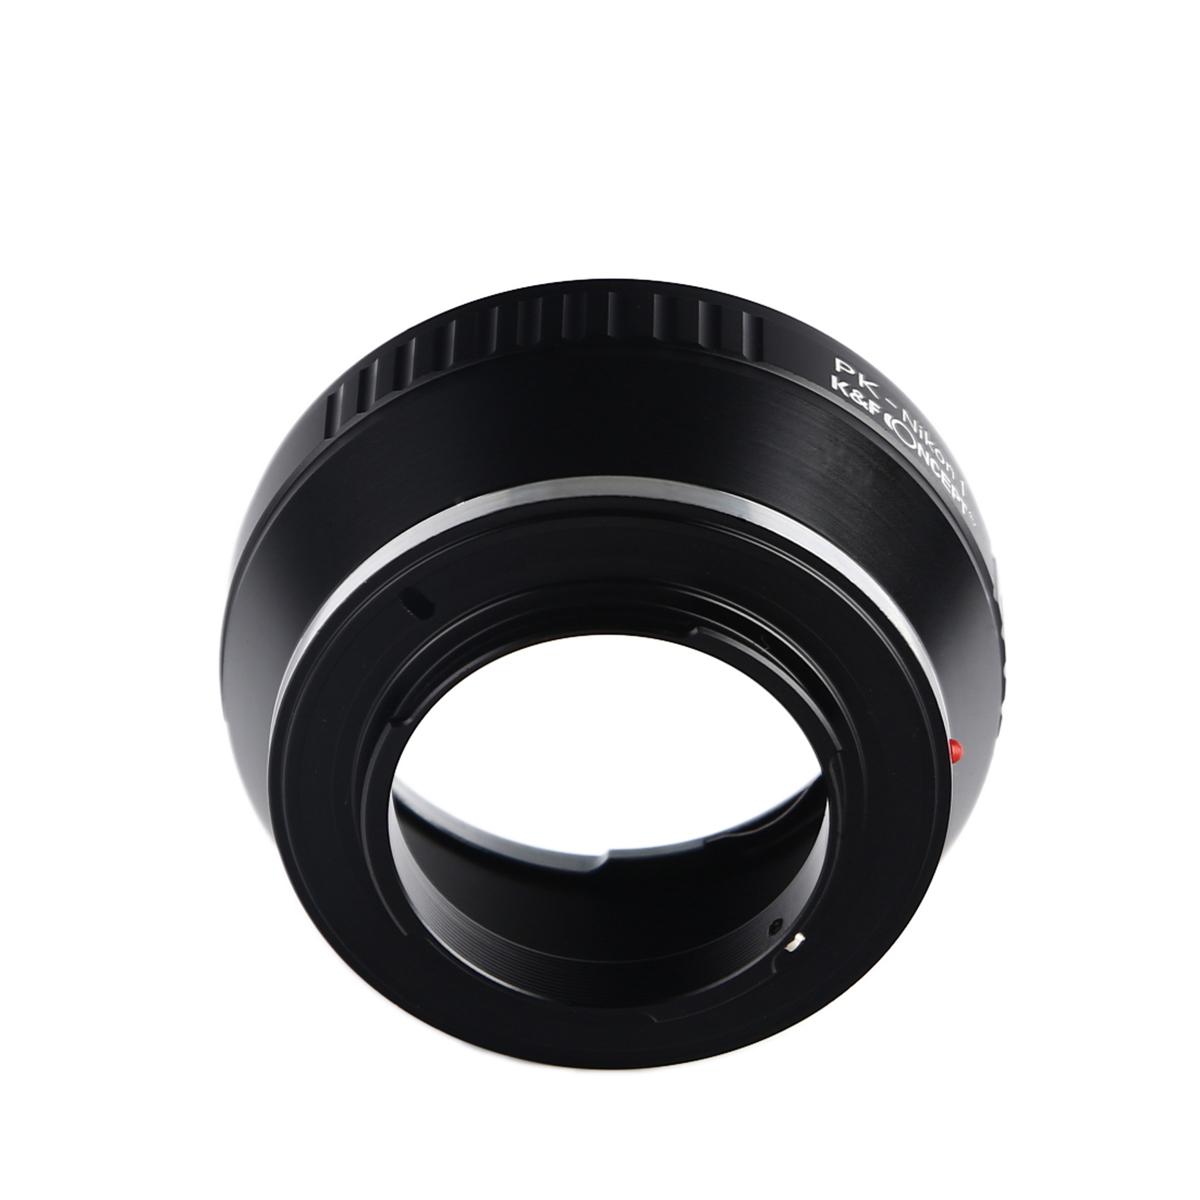 Pentax K Lenses to Nikon 1 Camera Mount Adapter